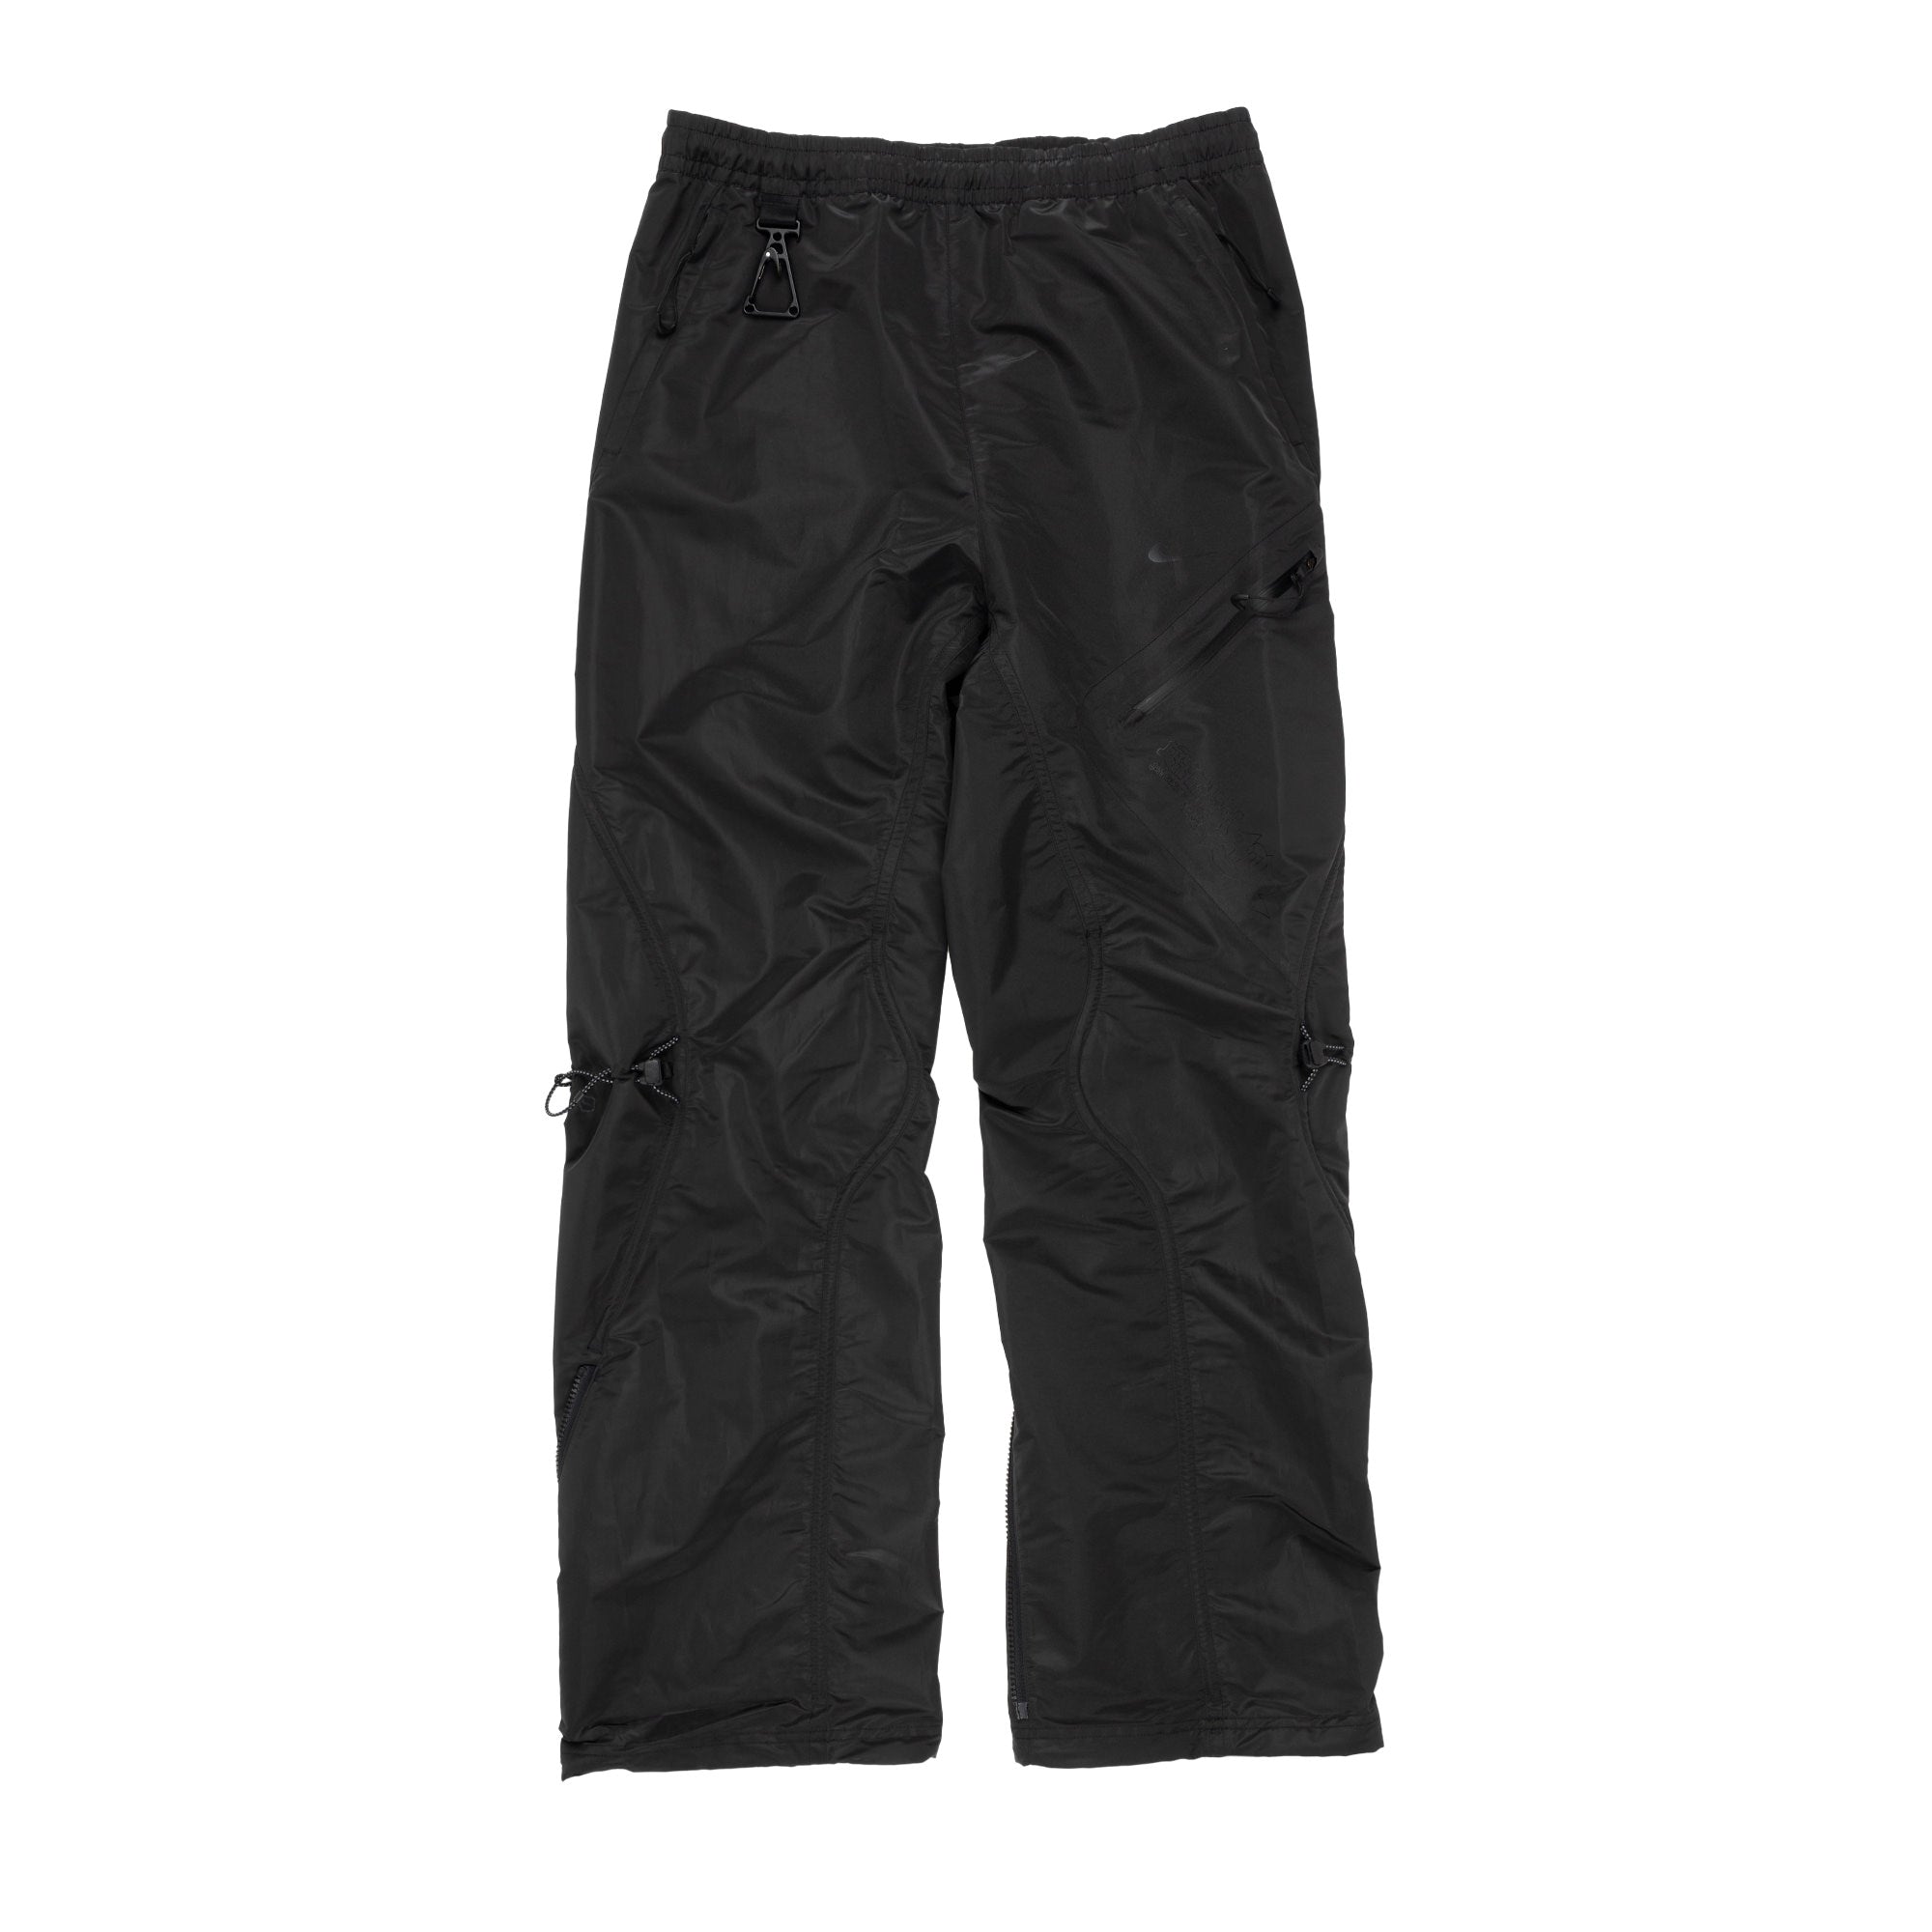 Nike x Off-White MC Pants Black DV4393-010 – Capsule